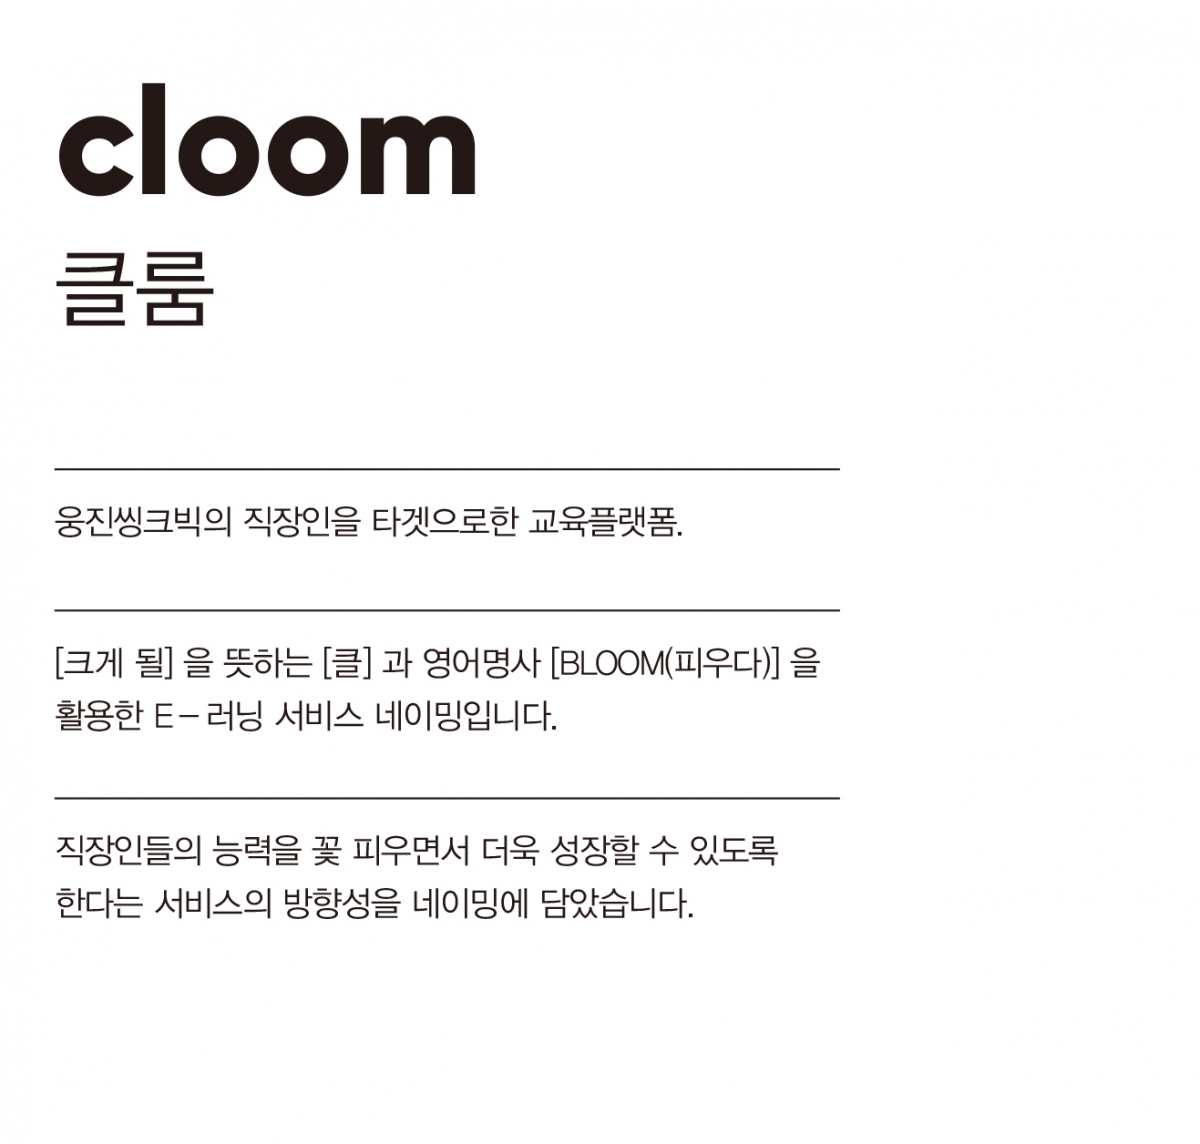 1_CLOOM_NAME.jpg